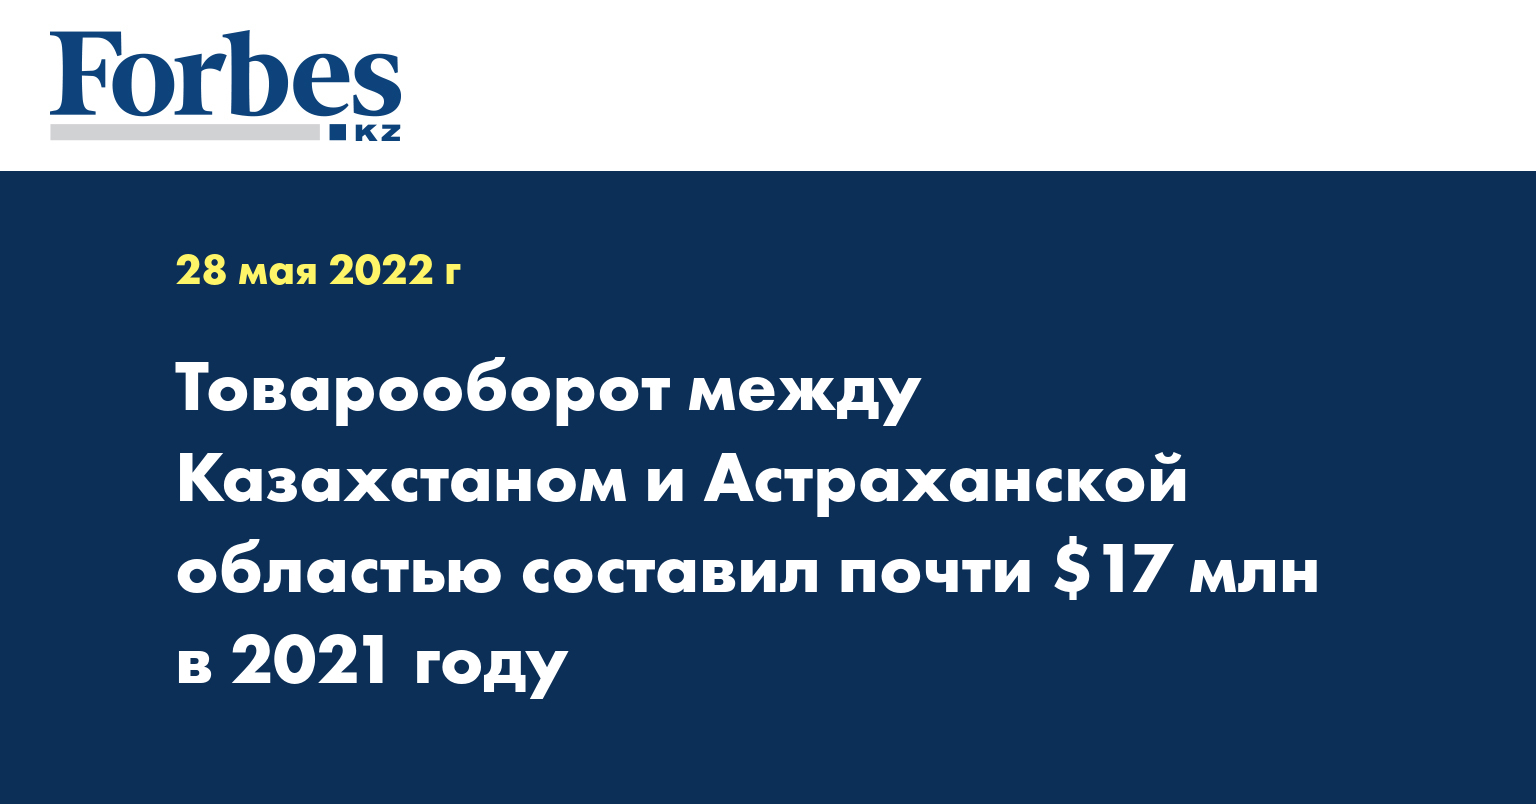 Товарооборот между Казахстаном и Астраханской областью составил почти $17 млн в 2021 году